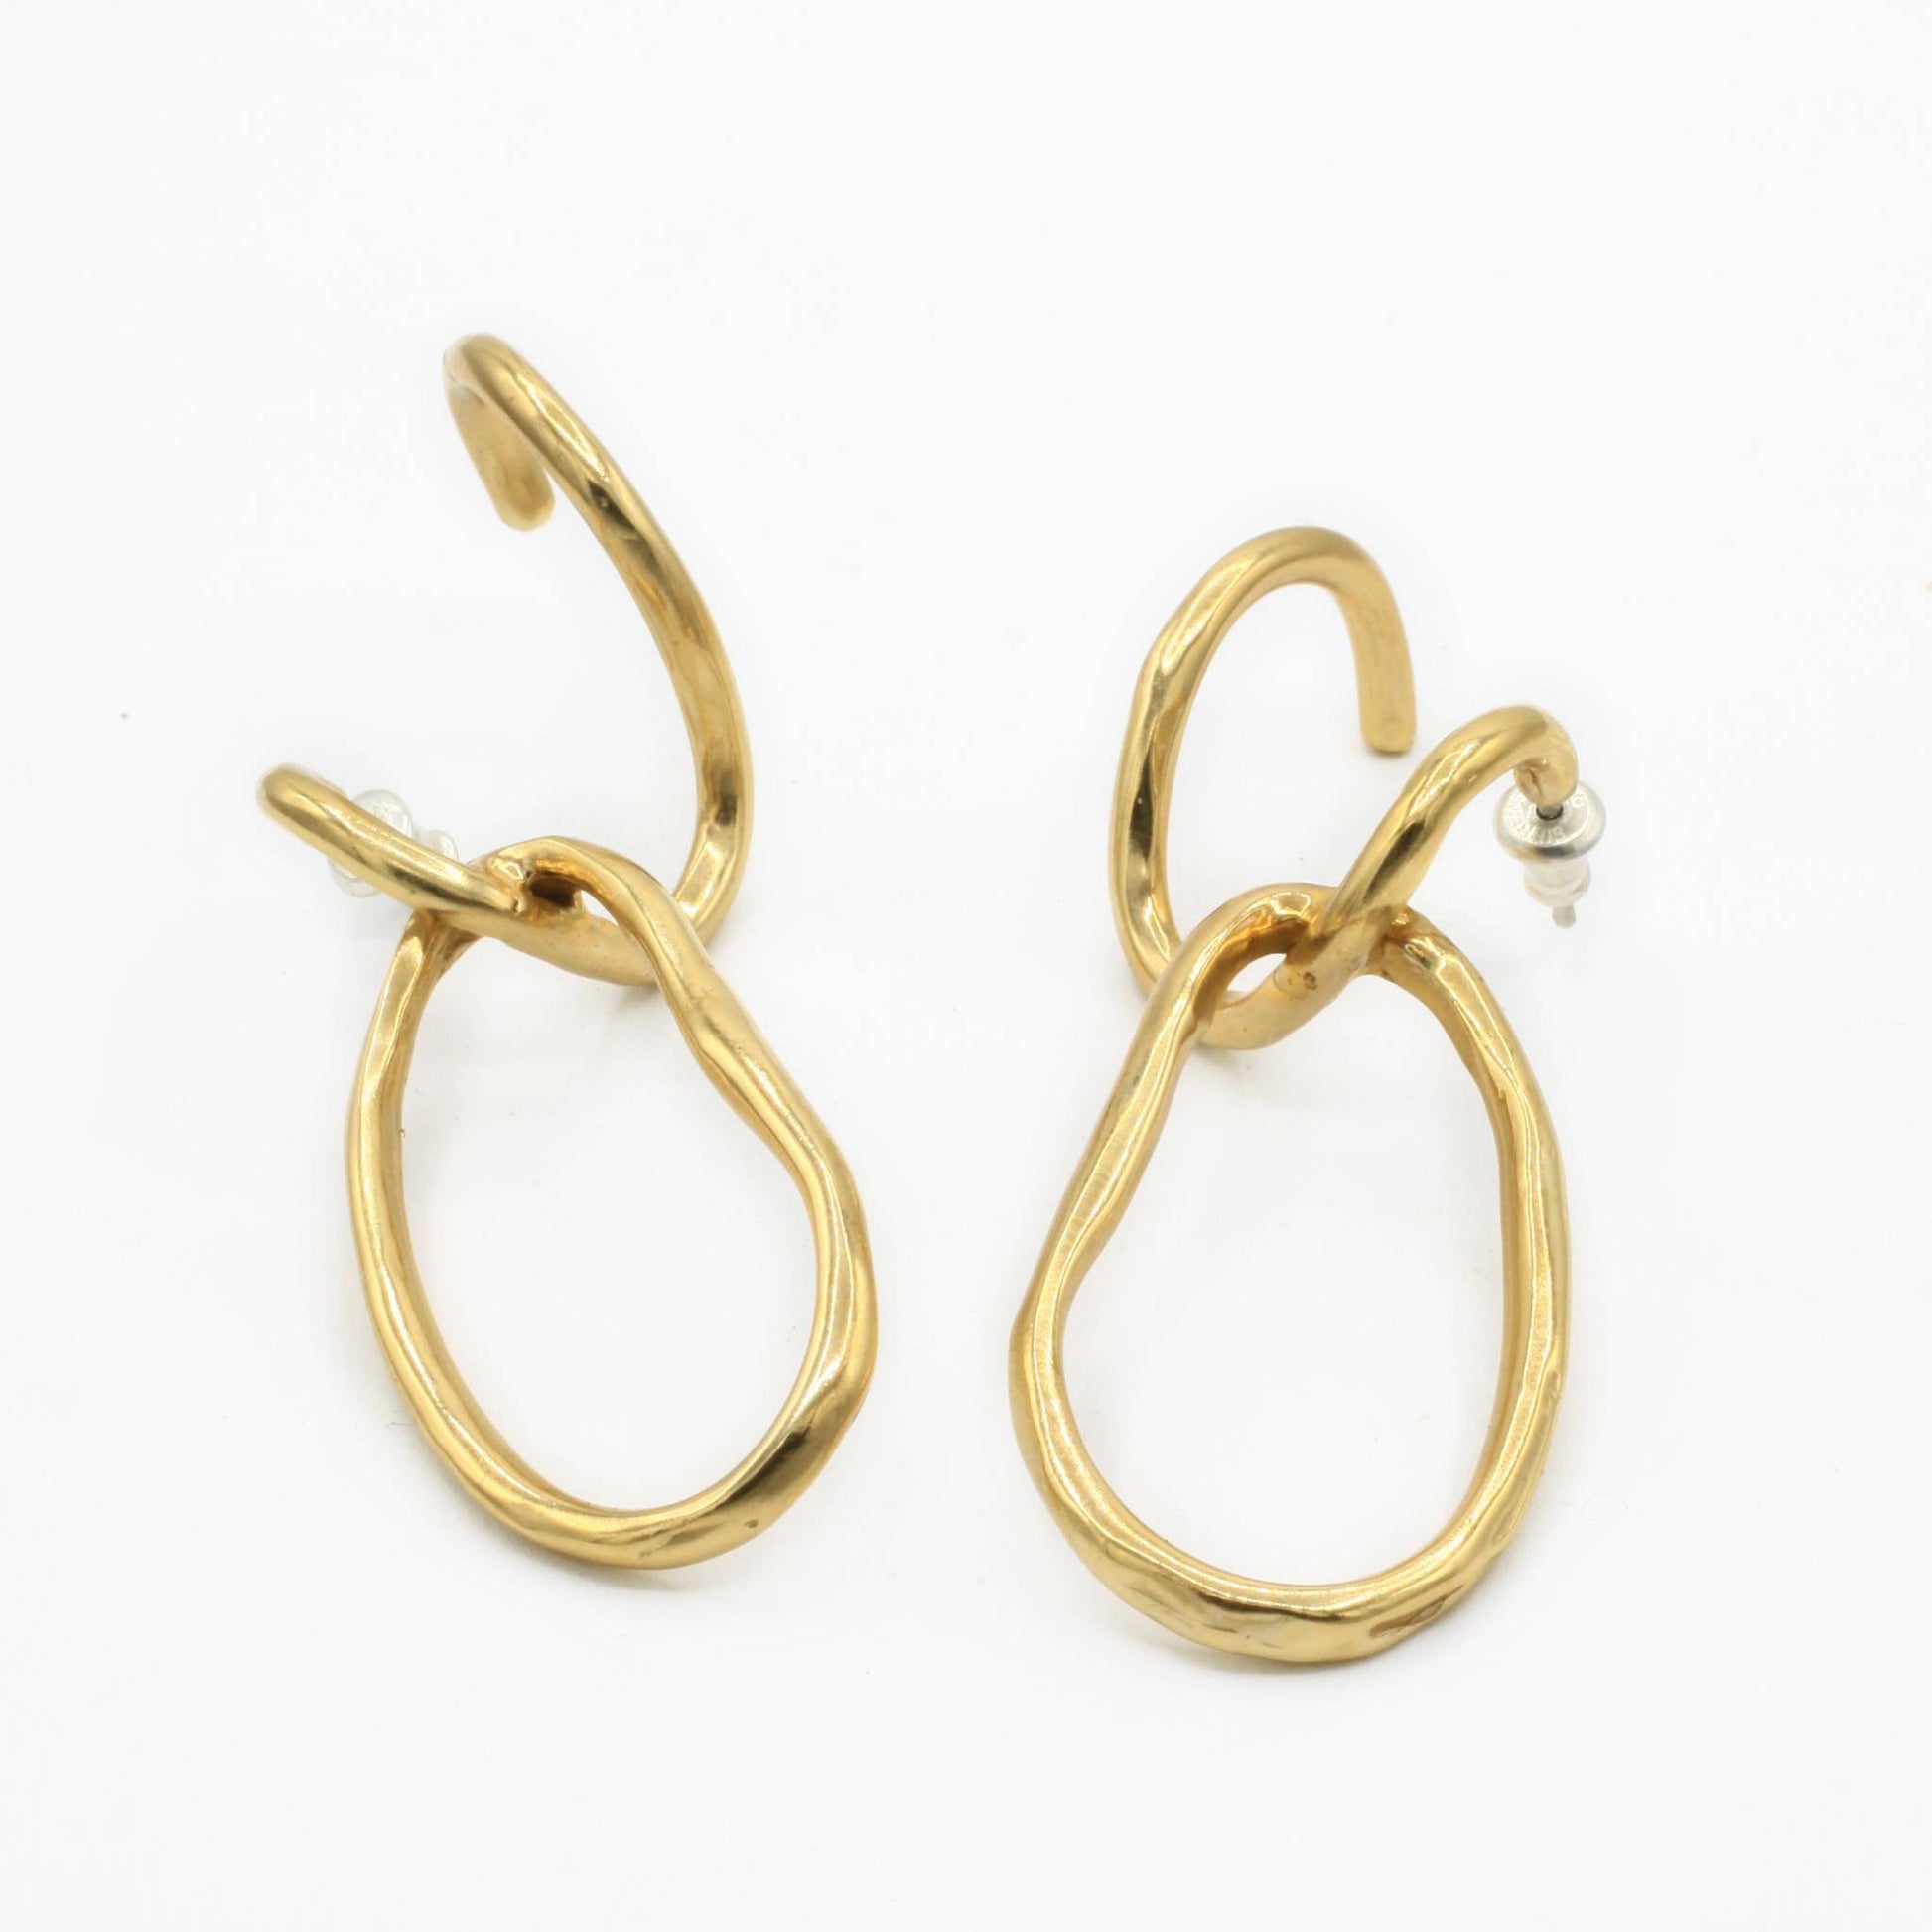 Odette New York | Ines Hoop Earrings | Firecracker